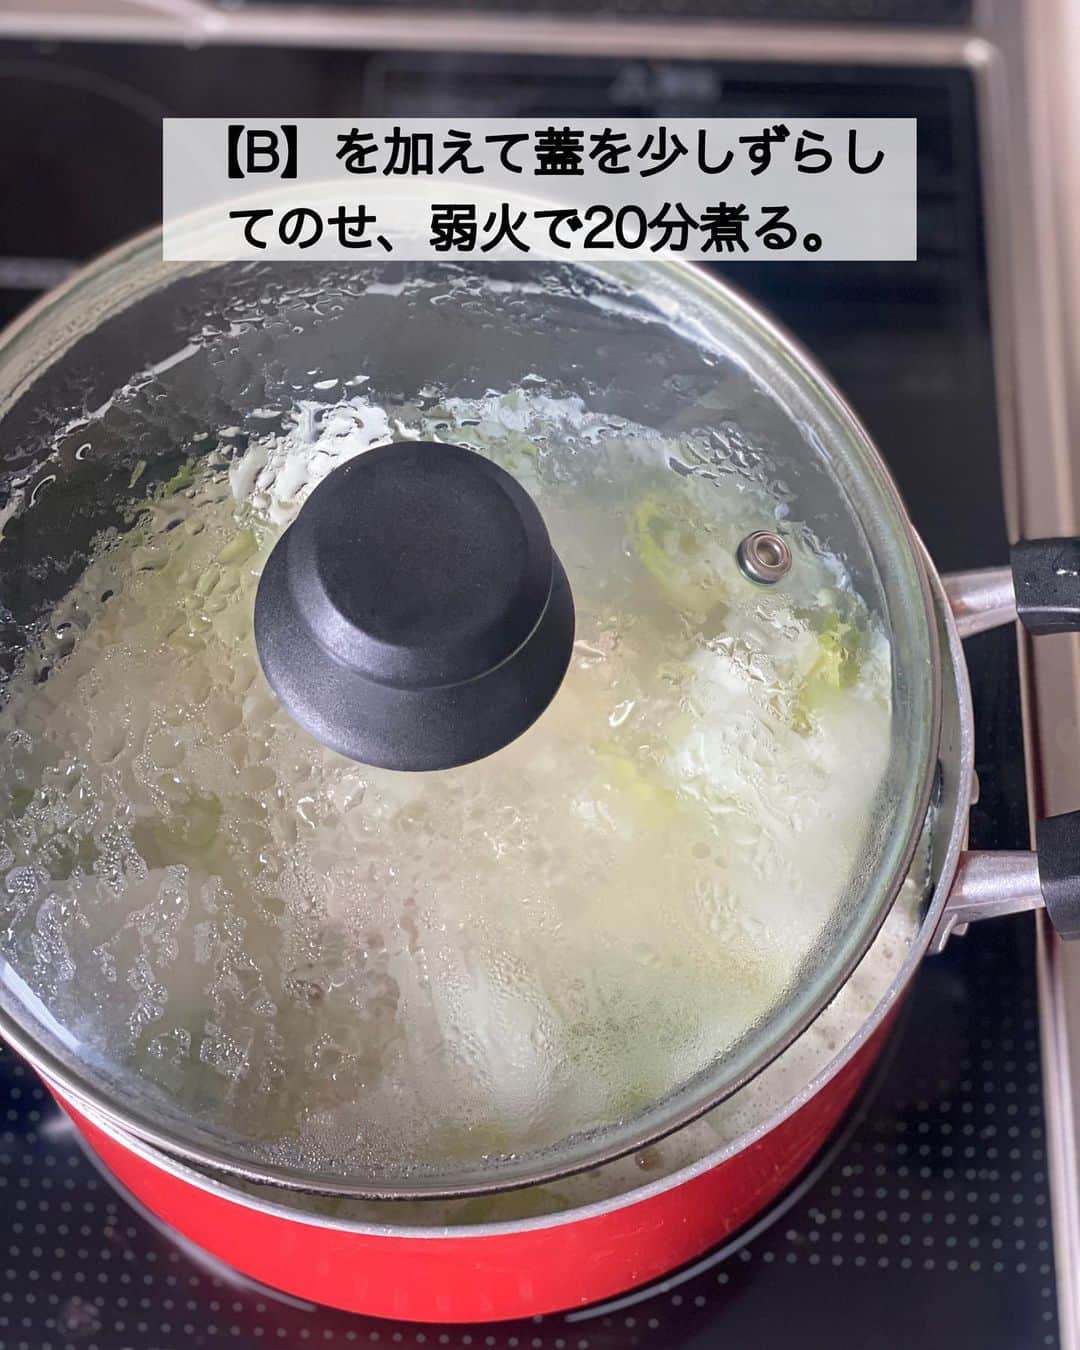 ちおりさんのインスタグラム写真 - (ちおりInstagram)「【煮るだけ簡単！参鶏湯風スープ】 ⁡ 他のレシピを見る→ @chiori.m.m をチェック✅ ⁡ ⁡ ━︎━︎━︎━︎━︎━︎━︎━︎━︎━︎━︎ 我が家のとろとろ参鶏湯 ⁡ Nadiaレシピ🆔 460895 ━︎━︎━︎━︎━︎━︎━︎━︎━︎━︎━︎ ⁡ ⁡ こんばんは(^ ^) ⁡ 今日は煮るだけで実は簡単♪ 参鶏湯風（サムゲタン）スープをご紹介させてください。 ⁡ 我が家では食べるおかずスープとして よく作るんですが、米の他に 大根と長いもで具材感と 自然なトロミをつけています。 ⁡ ⁡手羽元はほろほろ柔らか✨ お粥っぽいトロトロ感になるので 満足感があり、体調が良くない時や 食欲がない時でも食べやすいんです😊 ⁡ ⁡ 今週夫が体調不良でこれ2回ほど作ったけど🤲 やっと回復してきた感じ😌 ⁡ ⁡ 良かったら作ってみてください^ ^ ⁡ ⁡ ________________________________________ ⁡ ⁡ ✍︎ ✍︎recipe ✍︎ ✍︎ ⁡ 👩‍🌾【材料】2人分 •鶏手羽元………8本 •大根………………150g •長いも……………100g •長ねぎ……………1/2本 •しょうが…………1かけ（20g） Aもち米（無ければ米）………大さじ3 A水……………………………………800㎖ A酒…………………………………大さじ3 Aおろしにんにく………………小さじ1 B鶏ガラスープの素…………大さじ1 B砂糖、塩………………………各小さじ1/2 •すりごま…………………………大さじ2 •好みでごま油…………………少々 ⁡ ⁡ ⁡ ________________________________________ ⁡ ⁡ ⁡ 👩‍🍳【作り方】 ①大根は皮をむき大きめの乱切りにする。長ねぎは小口切りにする。しょうがはせん切りにする。 ⁡ ②鍋に【A】と鶏手羽元、大根、長ねぎの1/2量、しょうがを入れて中火にかけ、沸騰してきたらアクをとる。 ⁡ ③【B】を加えて蓋を少しずらしてのせ、弱火で20分煮る。 ⁡ ④長いもは皮をむきポリ袋に入れて叩き、粗めに割る。鍋に加え、すりごまをふり、再び蓋をのせてさらに10分ほど煮たら火からおろし、粗熱がとれるまでおく。（長いもを加えたら時々箸で混ぜてください。冷めてくると手羽元が柔らかくなります。） ⁡ ⑤再び弱火であたため、必要であれば塩少々で味を調えて残りの長ねぎを加えて混ぜる。器に盛り、好みでごま油をたらす。 ⁡ ⁡ ________________________________________ ⁡ ⁡ ⁡ 📝【POINT】 •塩を塩麹で代用するとより美味しくなります。 ⁡ •しょうがはお好みで増やしてください。 ⁡ •おろしにんにくはチューブで代用OKです。 ⁡ •長いもは省いてもOKです。 ⁡ •すりごまは省いてもOKです。 ⁡ •仕上げに甘栗を加えても美味しいです。 ⁡ •トロミがつきすぎてしまったら水を足して調整してください。 ⁡ ⁡ ⁡ ≡︎≡︎≡︎≡︎≡︎≡︎≡︎≡︎≡︎≡︎≡︎≡︎≡︎≡︎≡︎≡︎≡︎≡︎≡︎≡︎≡︎≡︎≡︎≡︎≡︎≡︎≡︎≡︎≡︎≡︎≡︎≡︎≡︎≡︎ 【✅新刊レシピ本のお知らせ】 📕ちおり流くり返し作りたいおかず 🙇🏻‍♀️おかげ様で書籍累計10万部を突破しました。 ⁡ 全国の書店、Amazon、楽天ブックス 宝島チャンネルにて発売中です。 ⁡ ➤ ➤ ➤ @chiori.m.m のストーリーハイライト。 プロフィールのリンクからご覧いただけます😊 📗ちおりの簡単絶品おかず１、２ 既刊もぜひご覧いただきたいです。 ⁡ ≡︎≡︎≡︎≡︎≡︎≡︎≡︎≡︎≡︎≡︎≡︎≡︎≡︎≡︎≡︎≡︎≡︎≡︎≡︎≡︎≡︎≡︎≡︎≡︎≡︎≡︎≡︎≡︎≡︎≡︎≡︎≡︎≡︎≡︎ ⁡ ⁡ 最後までご覧いただきありがとうございます☺️ ⁑ ⁑ ⁑ ⁑ ⁑ ⁑ ⁑ ⁑ #参鶏湯 #参鶏湯レシピ   #Nadiaレシピ #Nadiaartist  #japanesefood   #食卓 #献立 #簡単ごはん #野菜レシピ  #簡単レシピ #節約レシピ #時短レシピ  #日々の暮らし #野菜スープ #スープレシピ   #夕飯レシピ #お弁当レシピ  #料理初心者  #おつまみレシピ #具沢山スープ  #手羽元 #手羽元レシピ #料理レシピ  #大根レシピ #長いも #鶏肉レシピ」5月20日 21時34分 - chiori.m.m